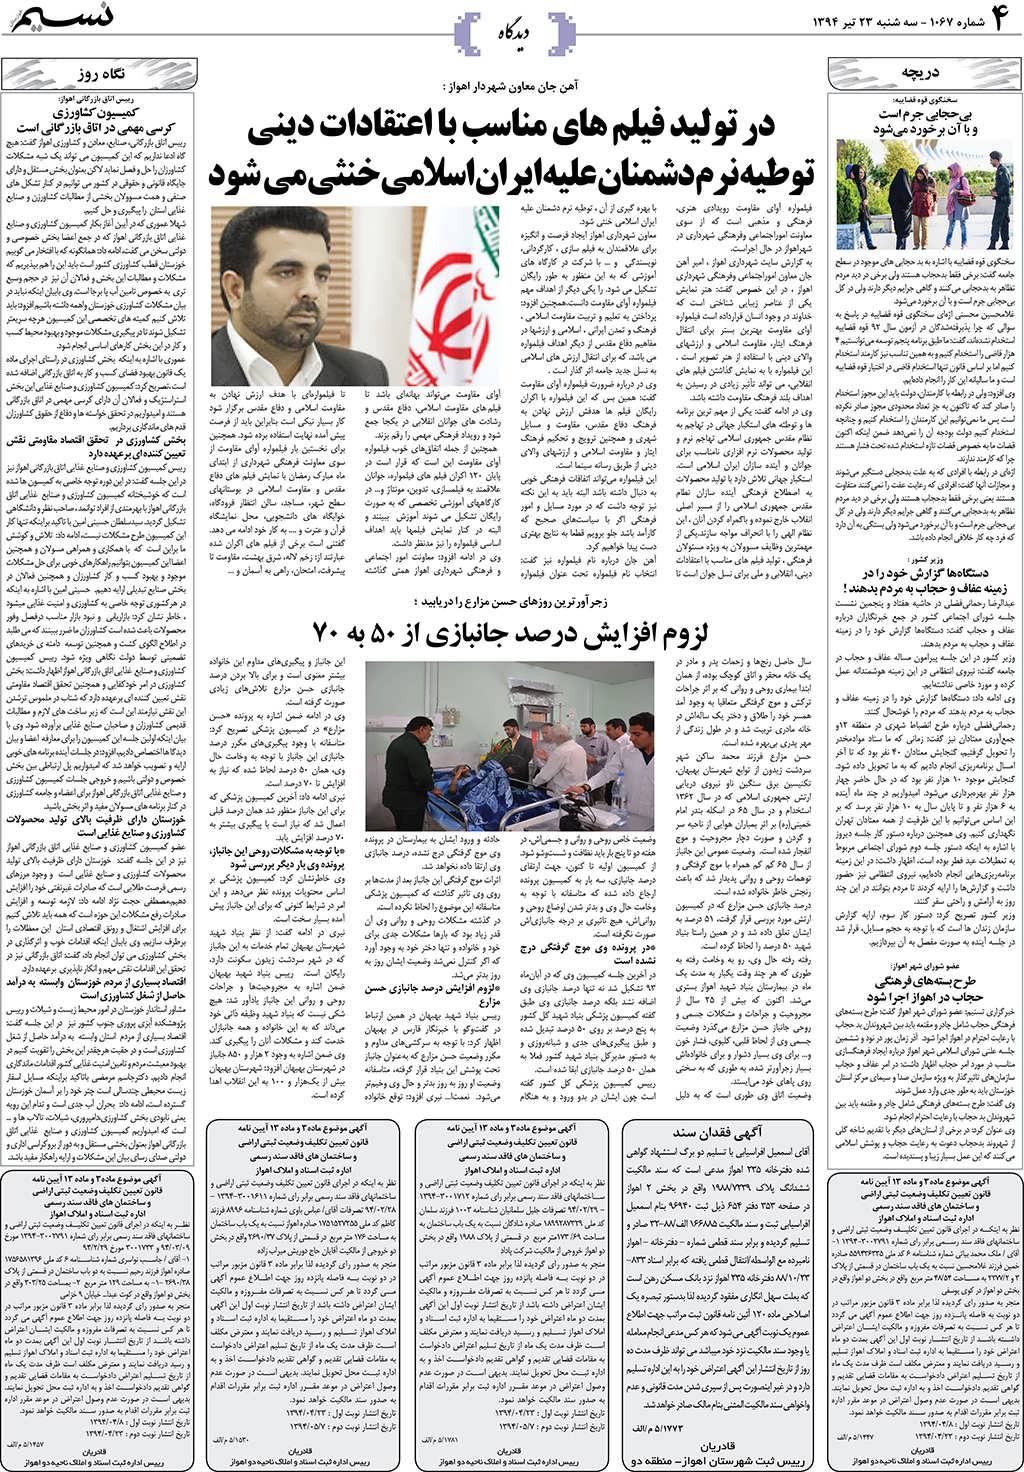 صفحه دیدگاه روزنامه نسیم شماره 1067